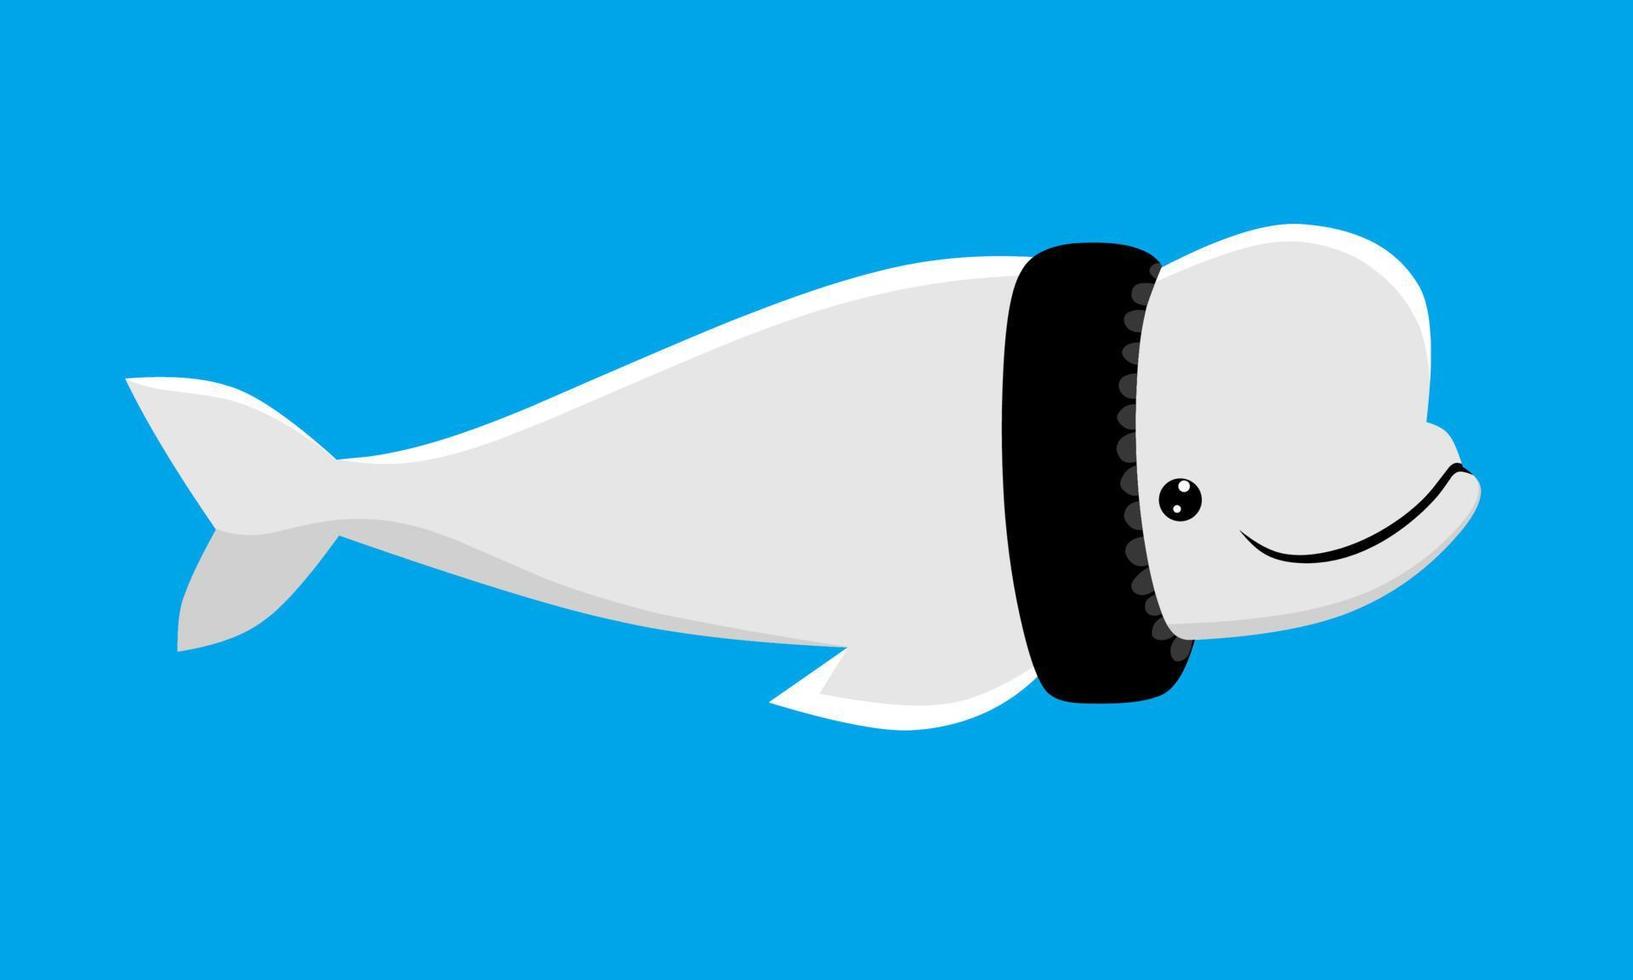 beluga, colar de pneus. baleia nadando no mar poluído com lixo. ilustração vetorial. vetor